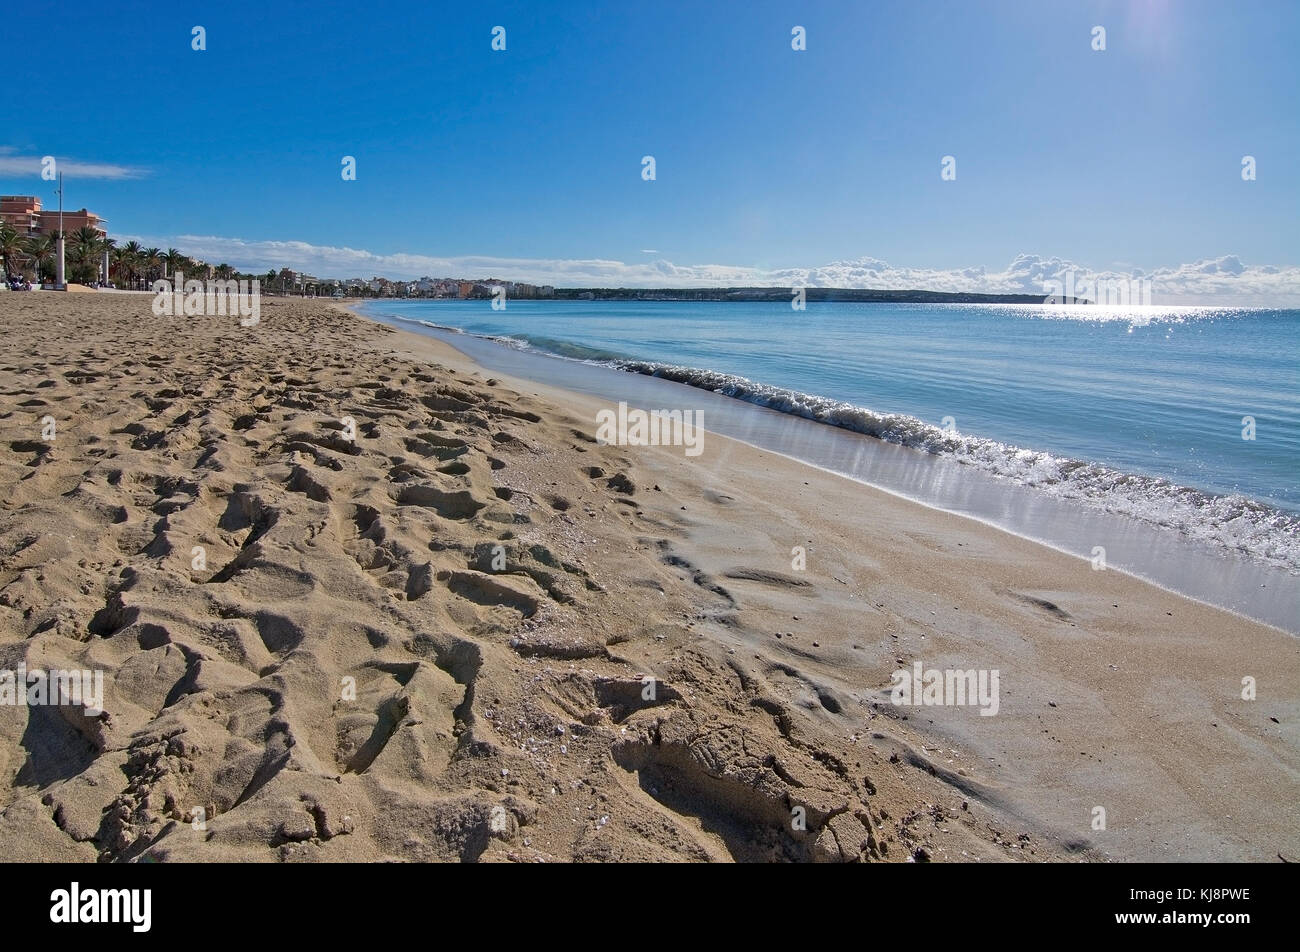 Maiorca, isole Baleari, Spagna - 9 novembre 2017: spiaggia playa de palma e Verde oceano turchese acqua in una giornata di sole il 9 novembre 2017 in mallor Foto Stock